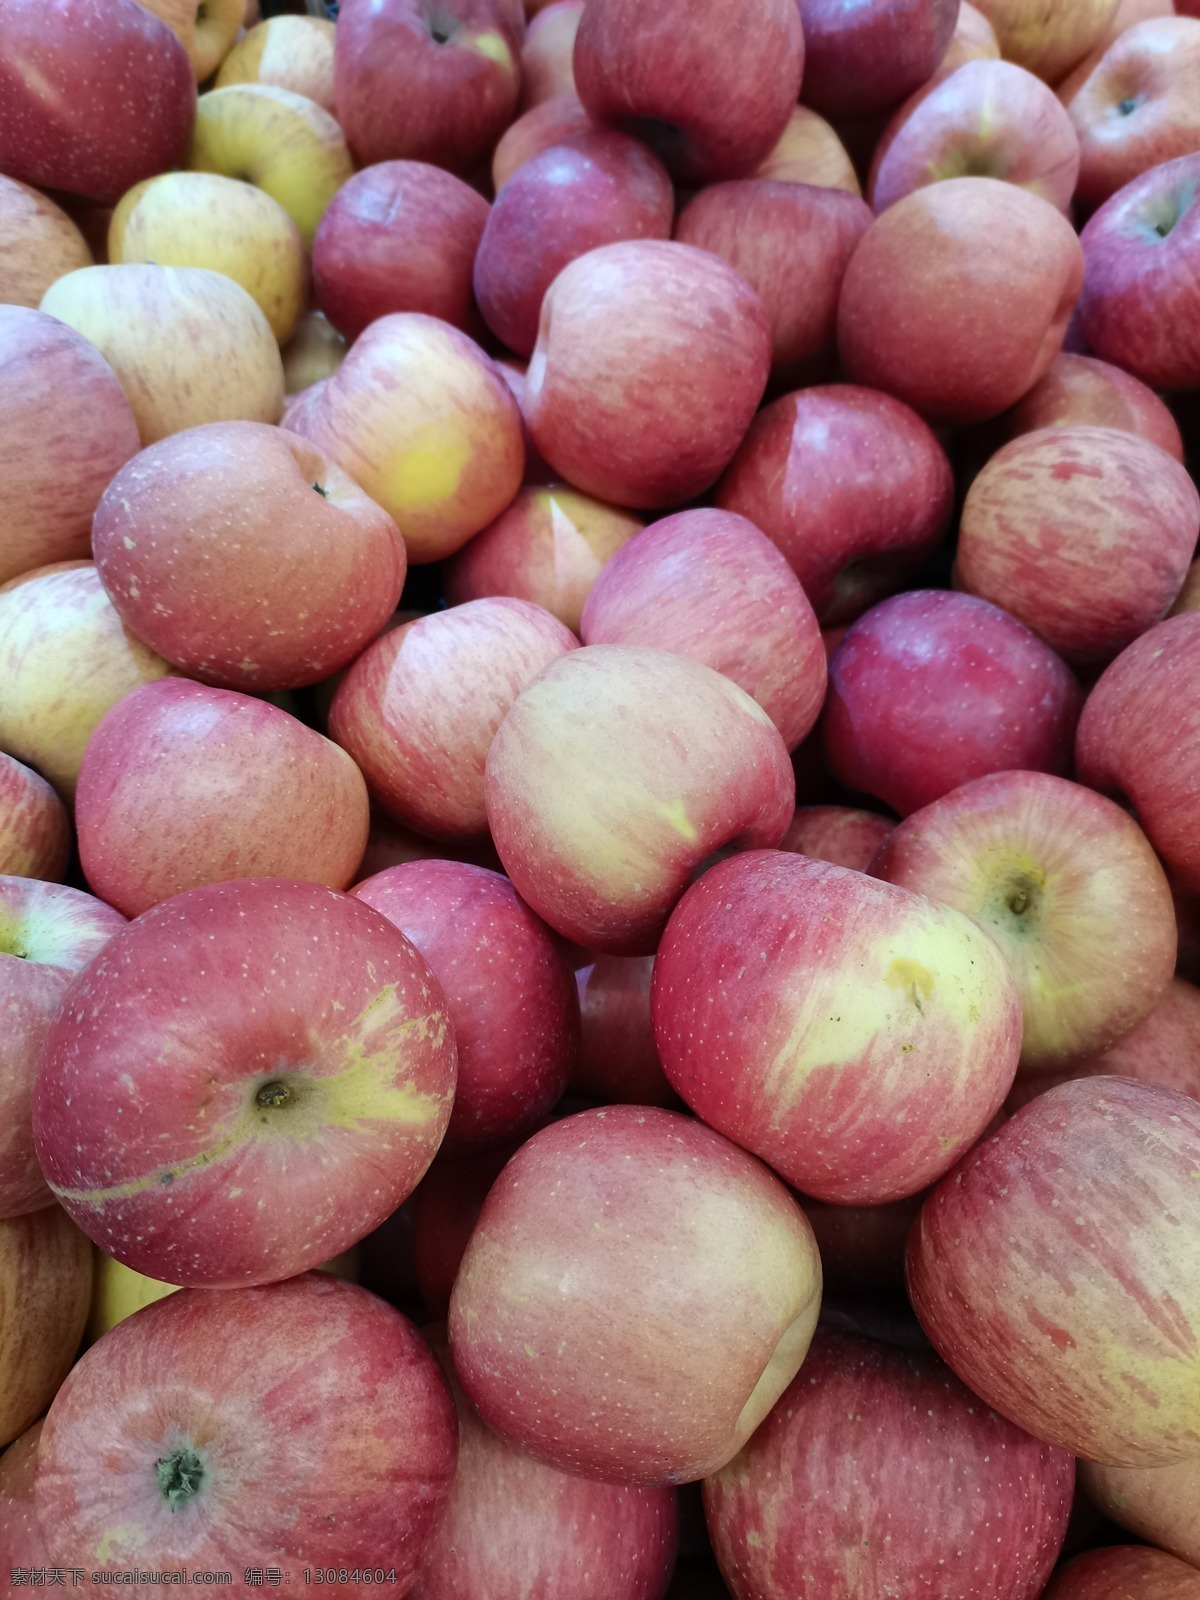 苹果图片 苹果 红苹果 圣诞节 平安果 水果 超市 零售 果子 红色 维生素 健康 美味 甜 生物世界